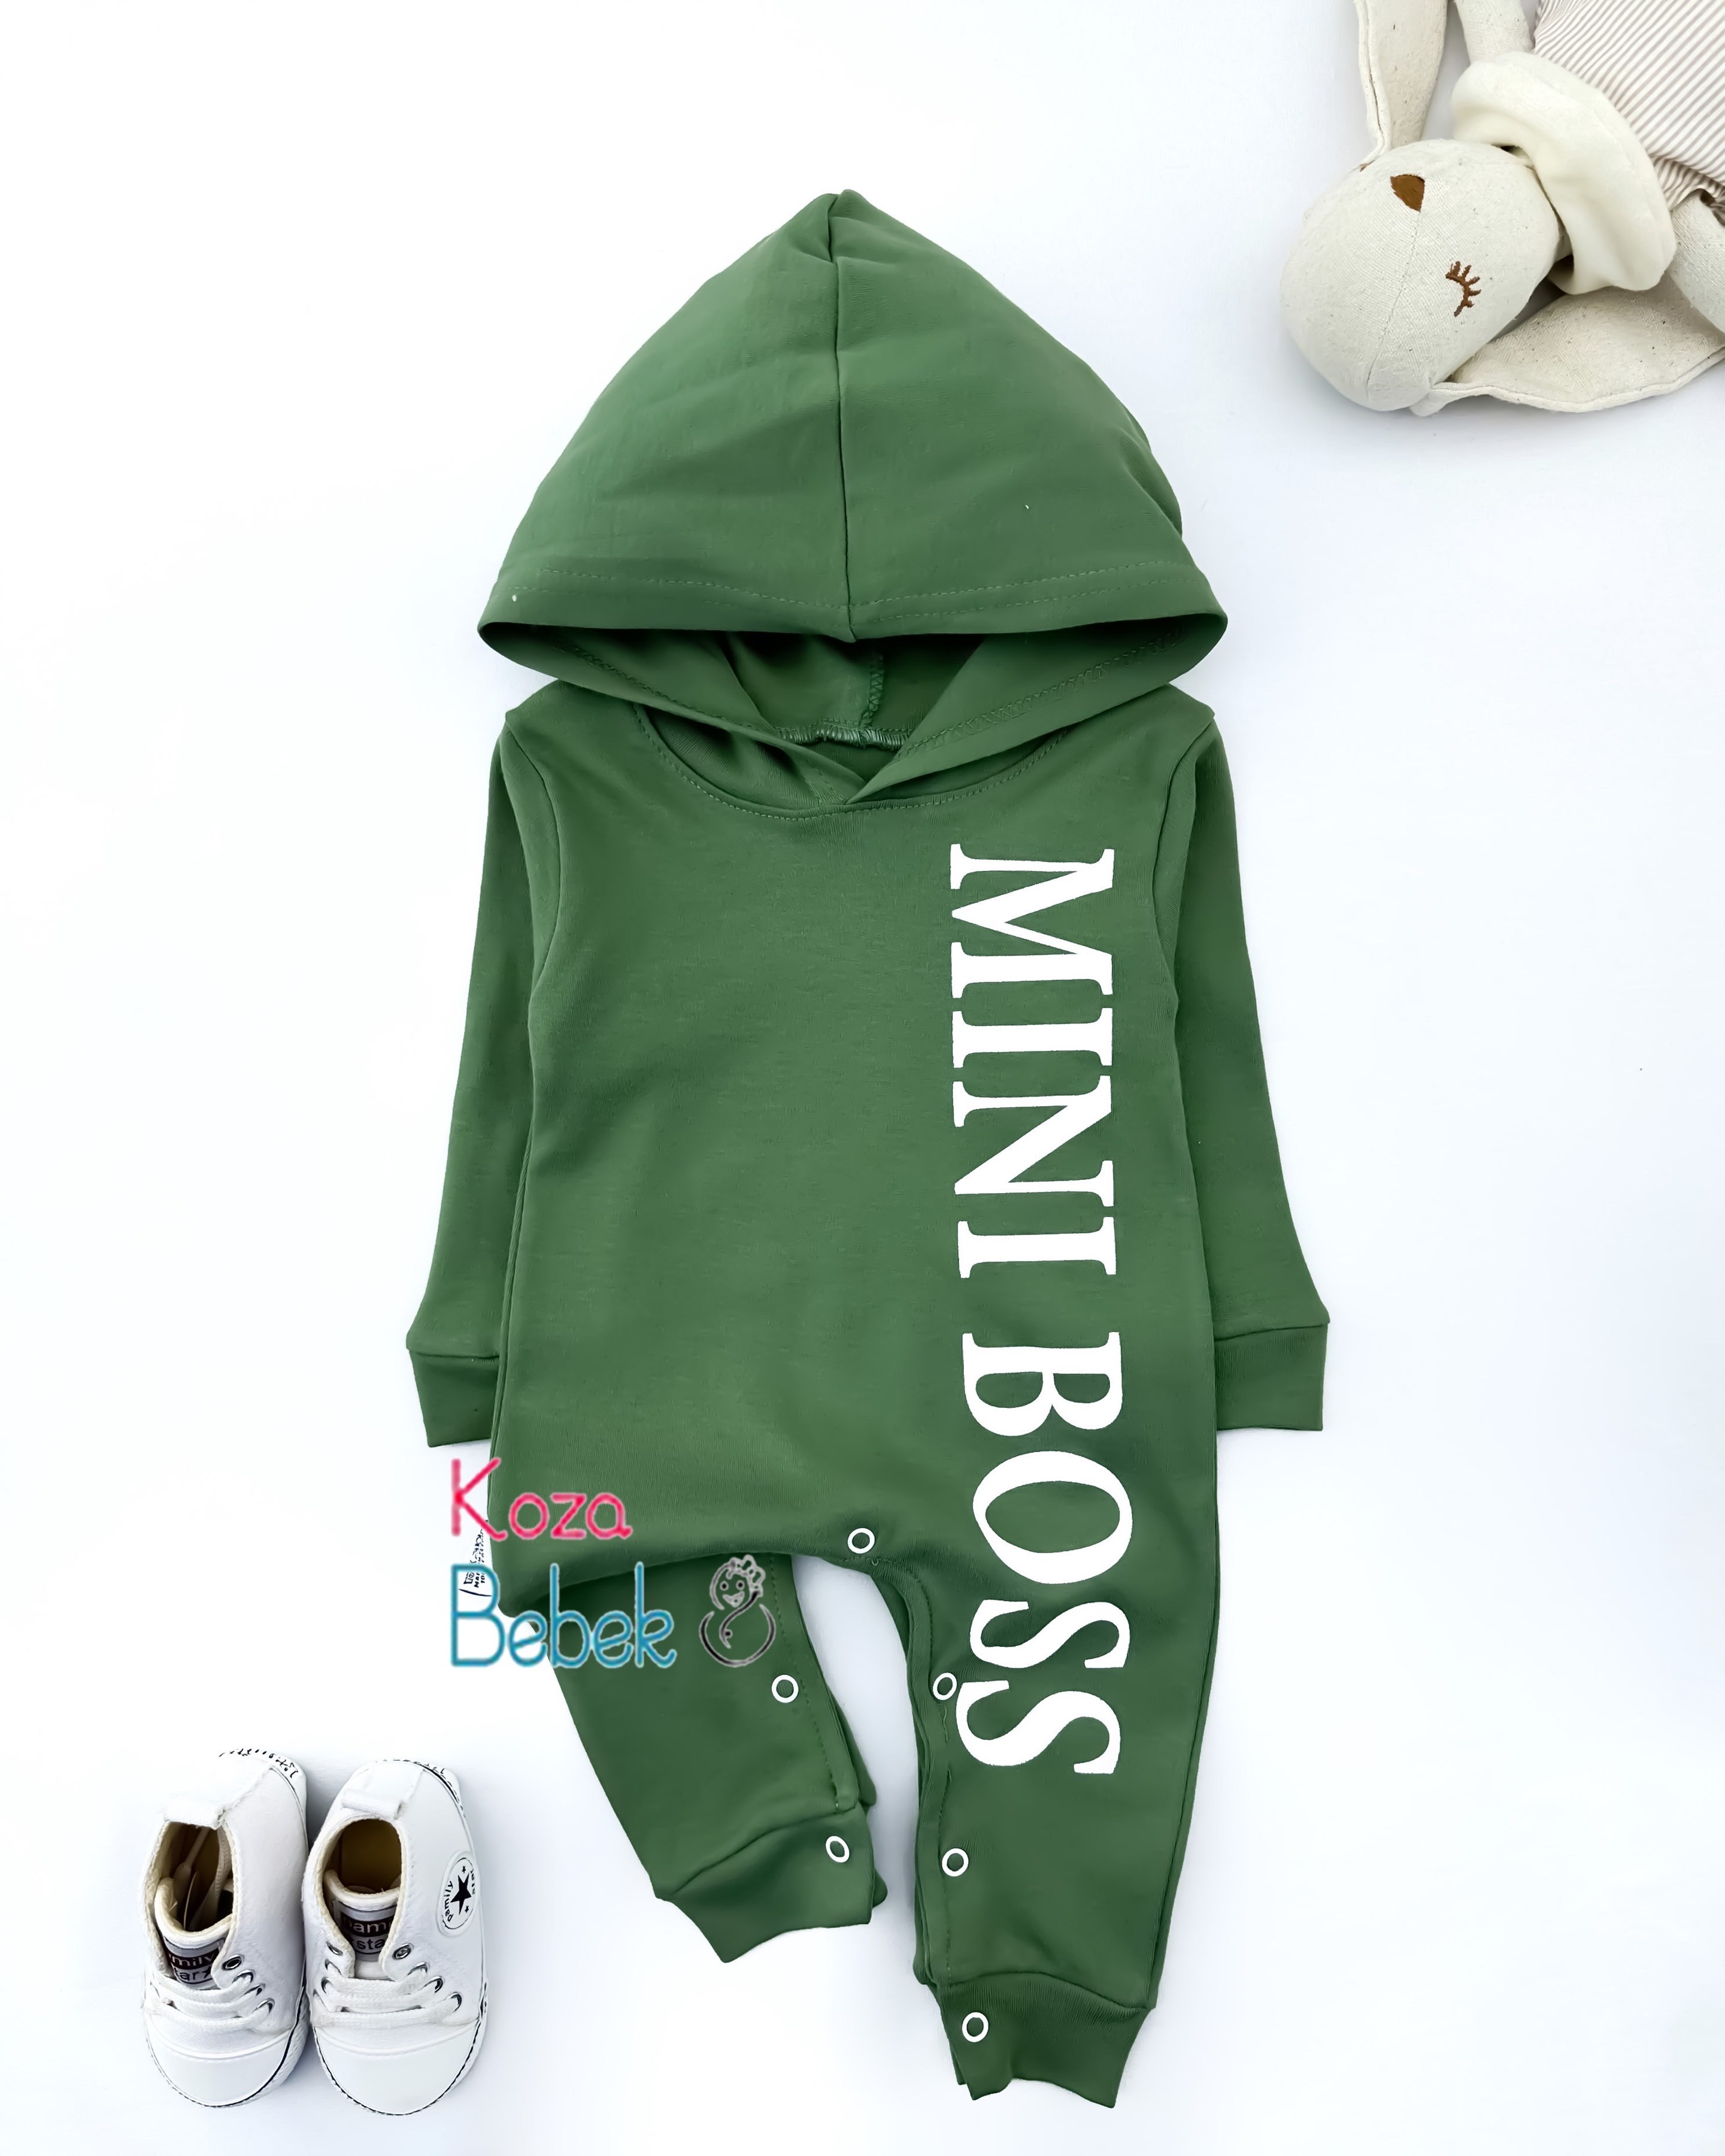 Miniapple Kapüşonlu MINIBOSS Baskılı Alttan Çıtçıtlı Bebek Tulumu